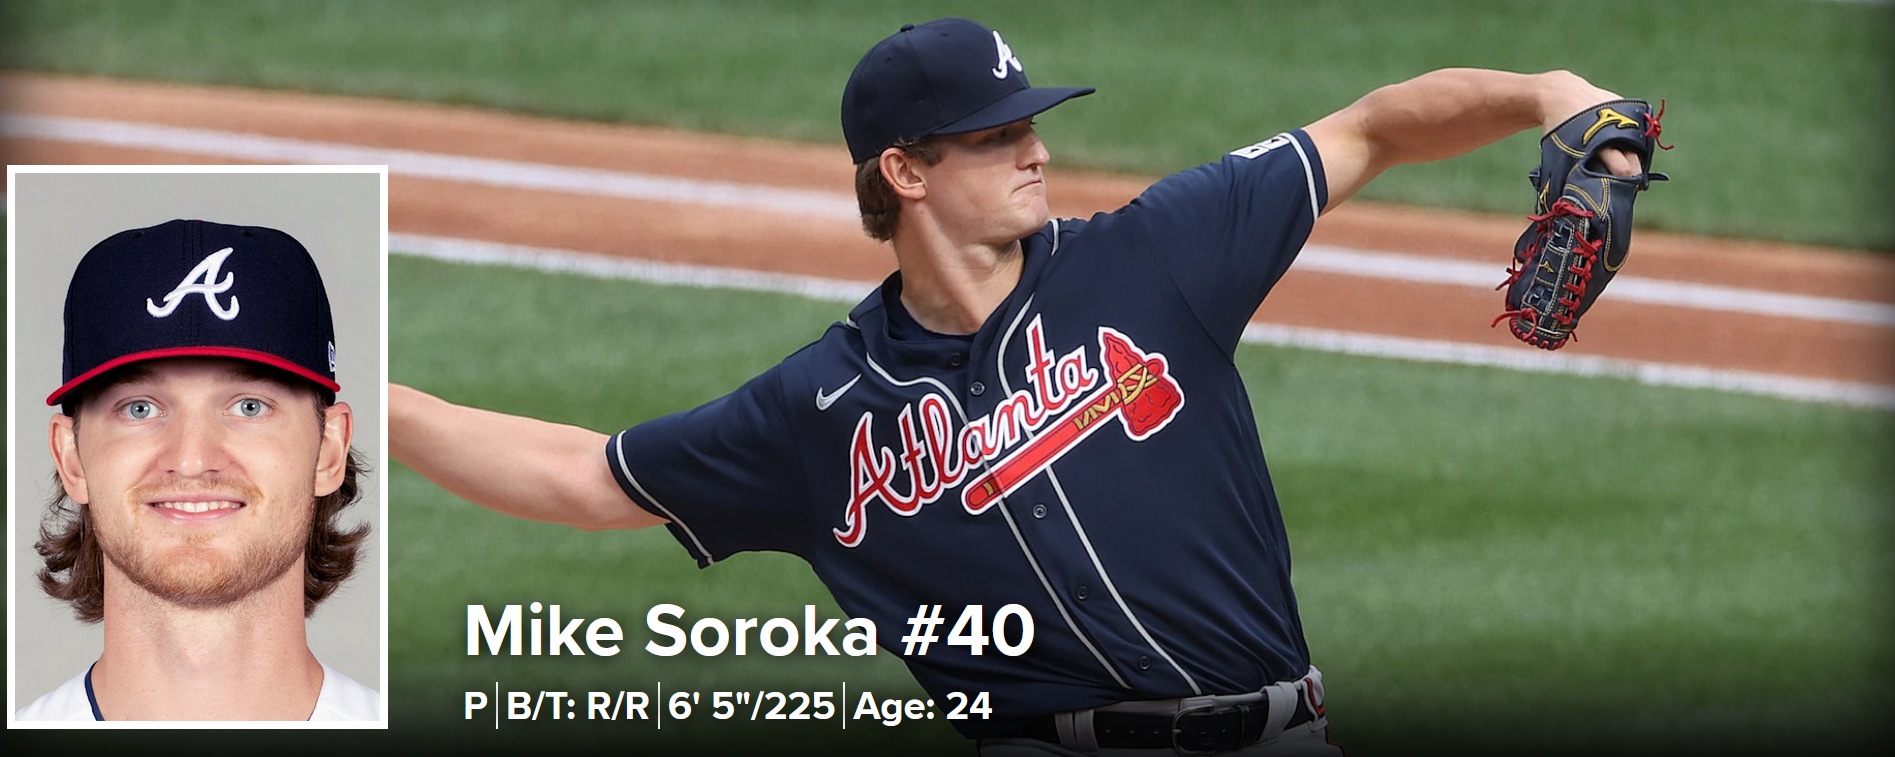 Mike Soroka, Baseball Wiki